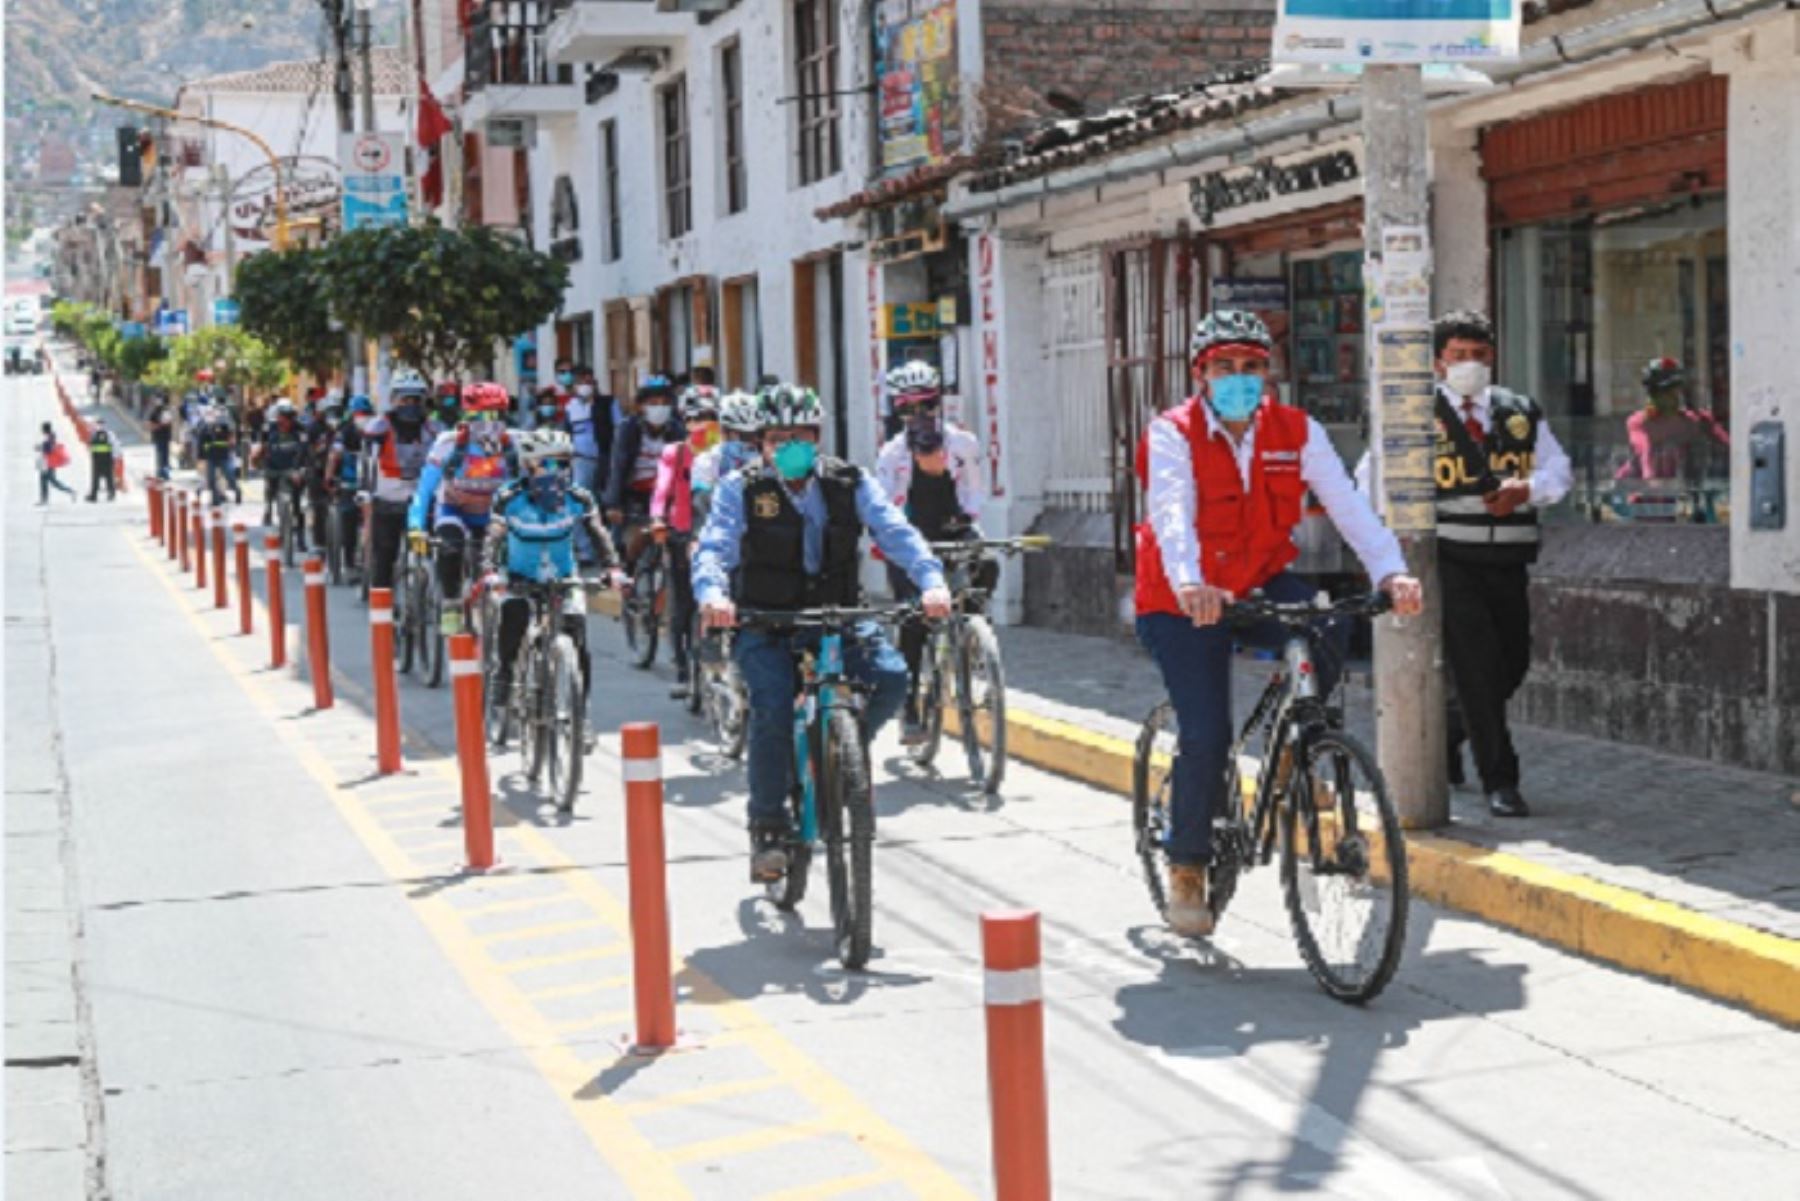 La provincia de Huamanga cuenta actualmente con 8 kilómetros de ciclovías que se ampliarán a 15 kilómetros, gracias al trabajo coordinado entre el MTC y la municipalidad provincial. Para ello, se está destinando un monto aproximado de S/ 450,000.